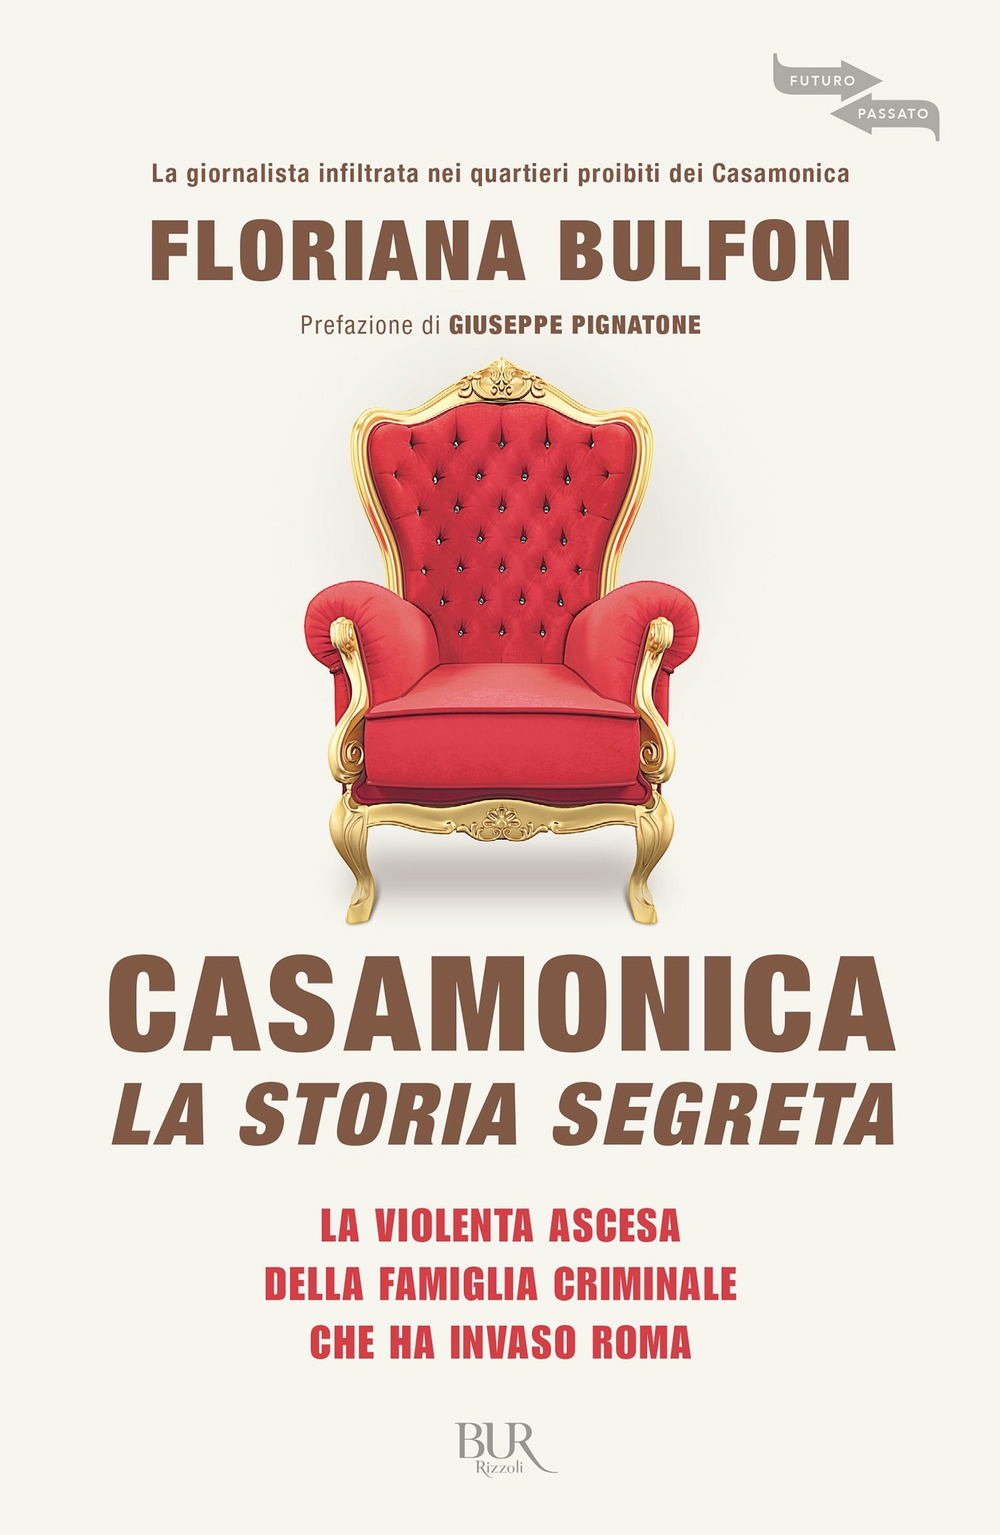 Image of Casamonica, la storia segreta. La violenta ascesa della famiglia criminale che ha invaso Roma